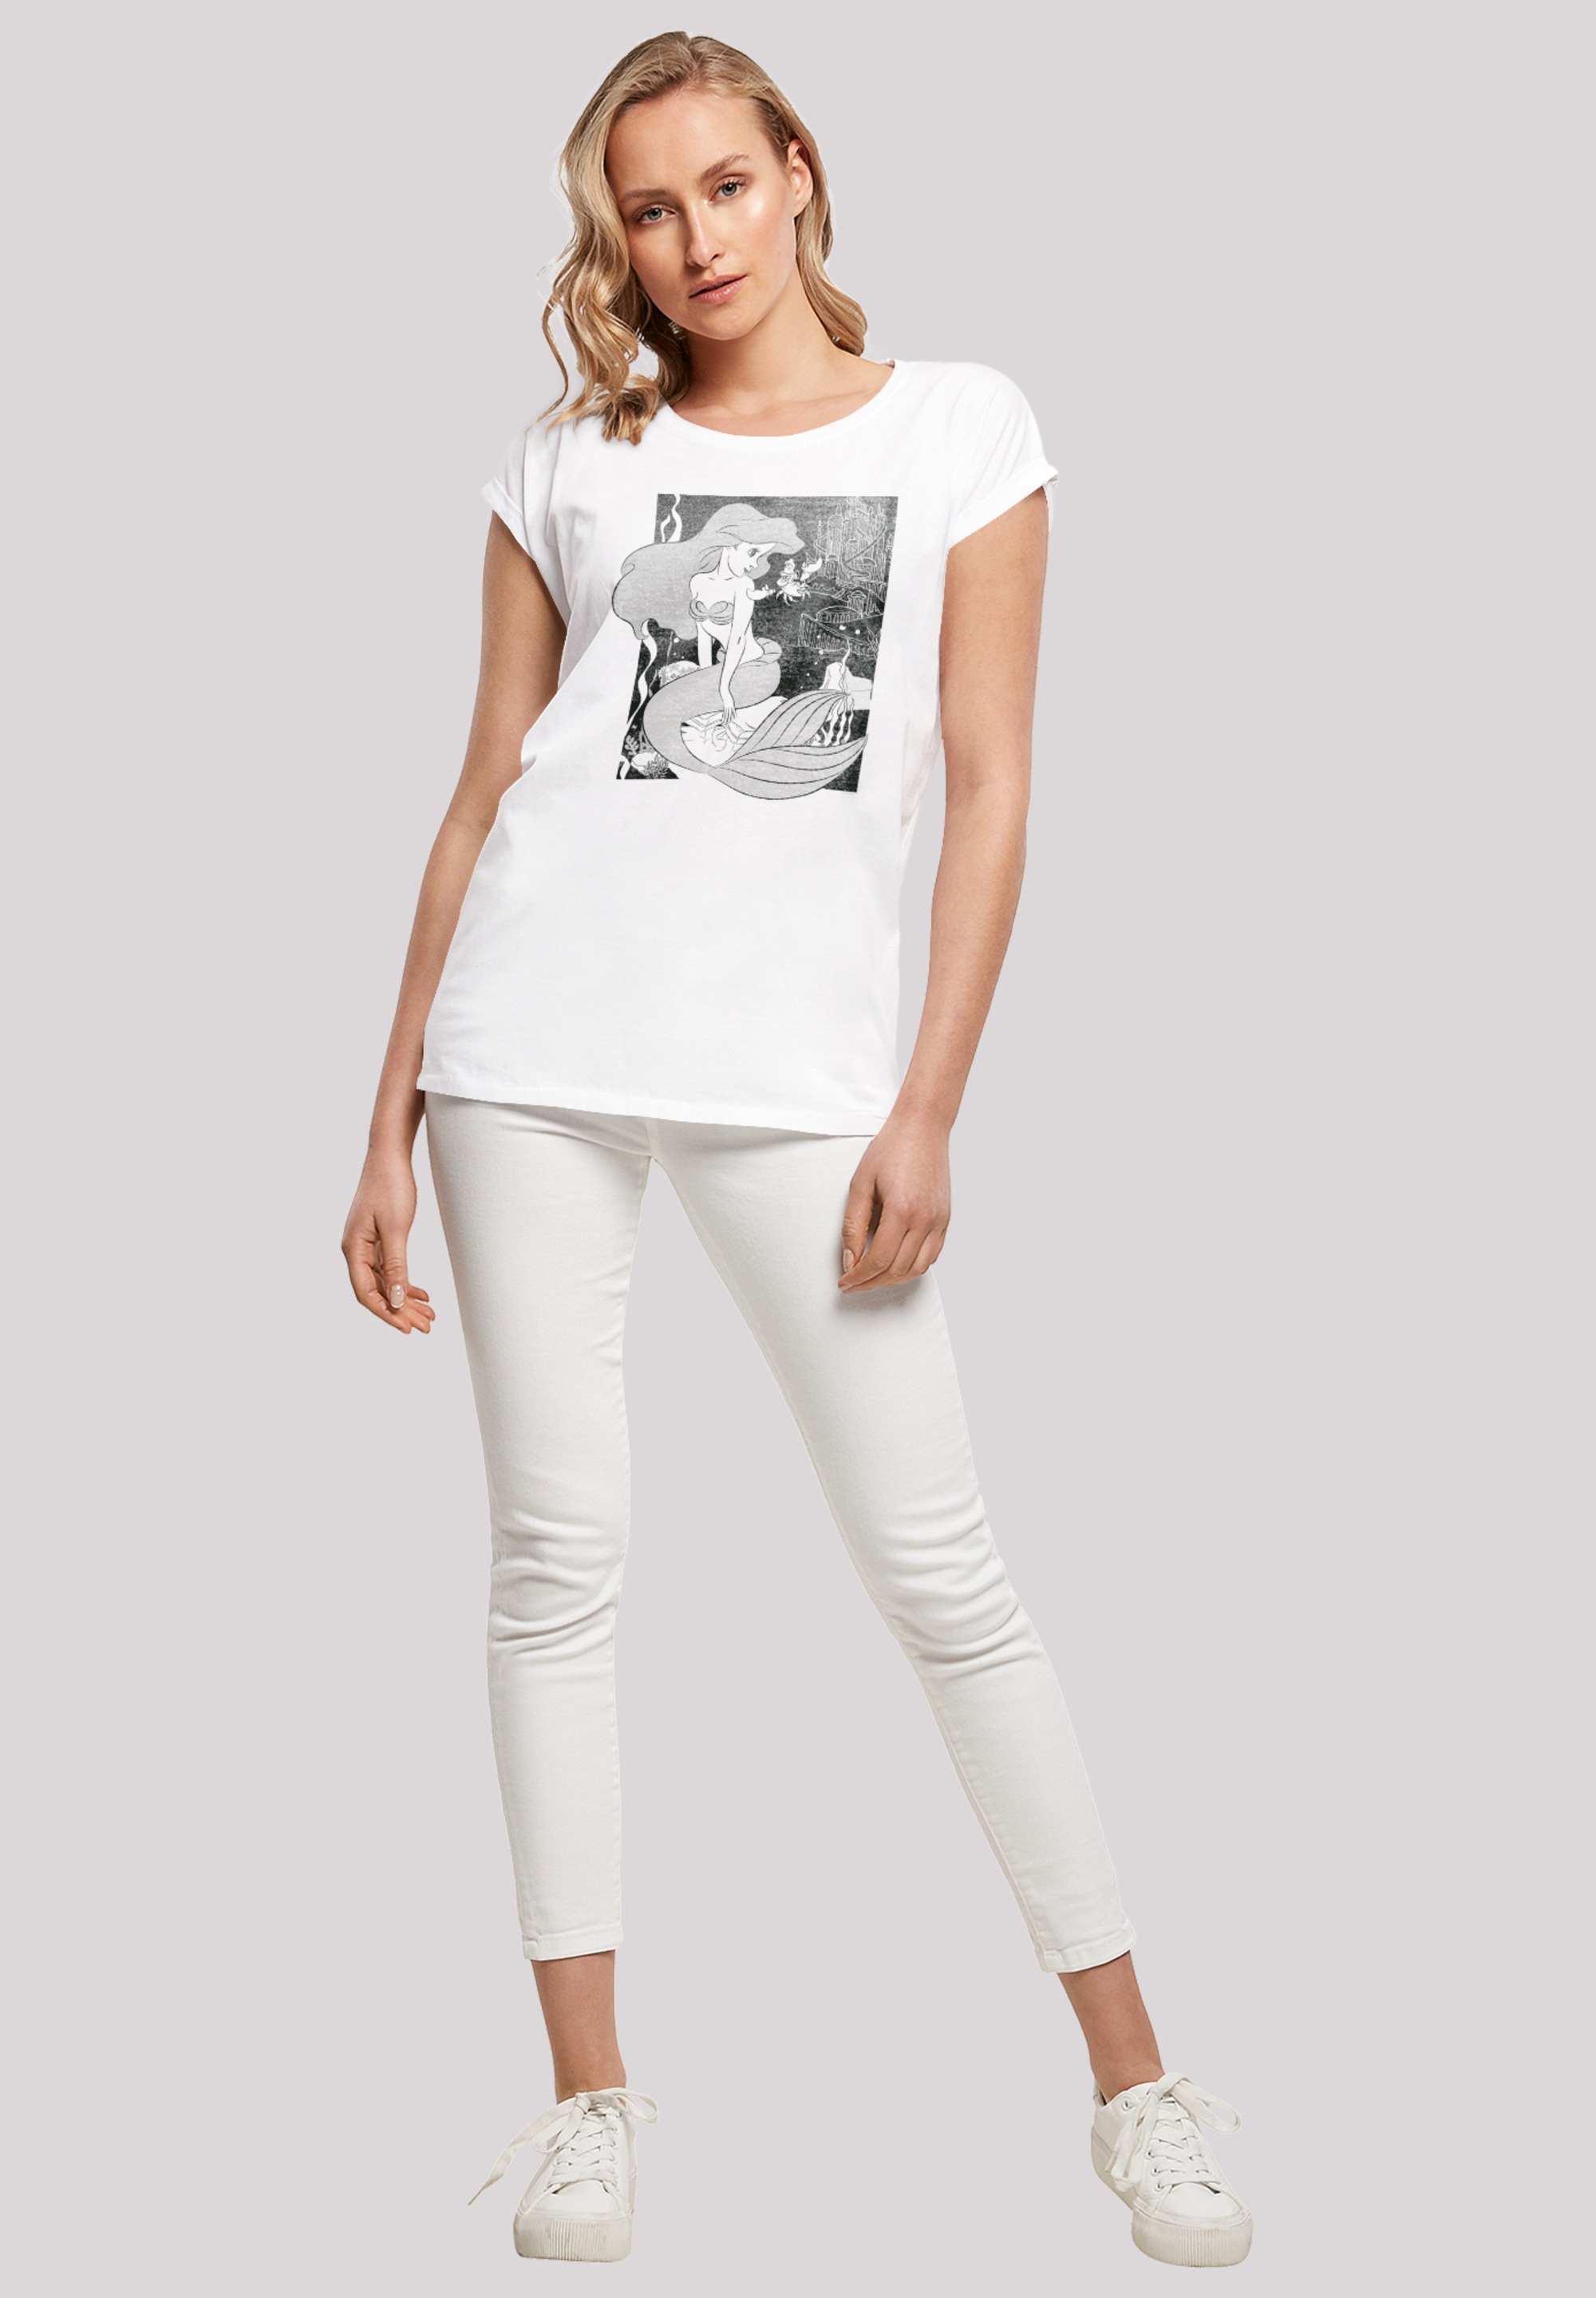 Meerjungfrau«, F4NT4STIC Arielle »Disney T-Shirt Print shoppen die